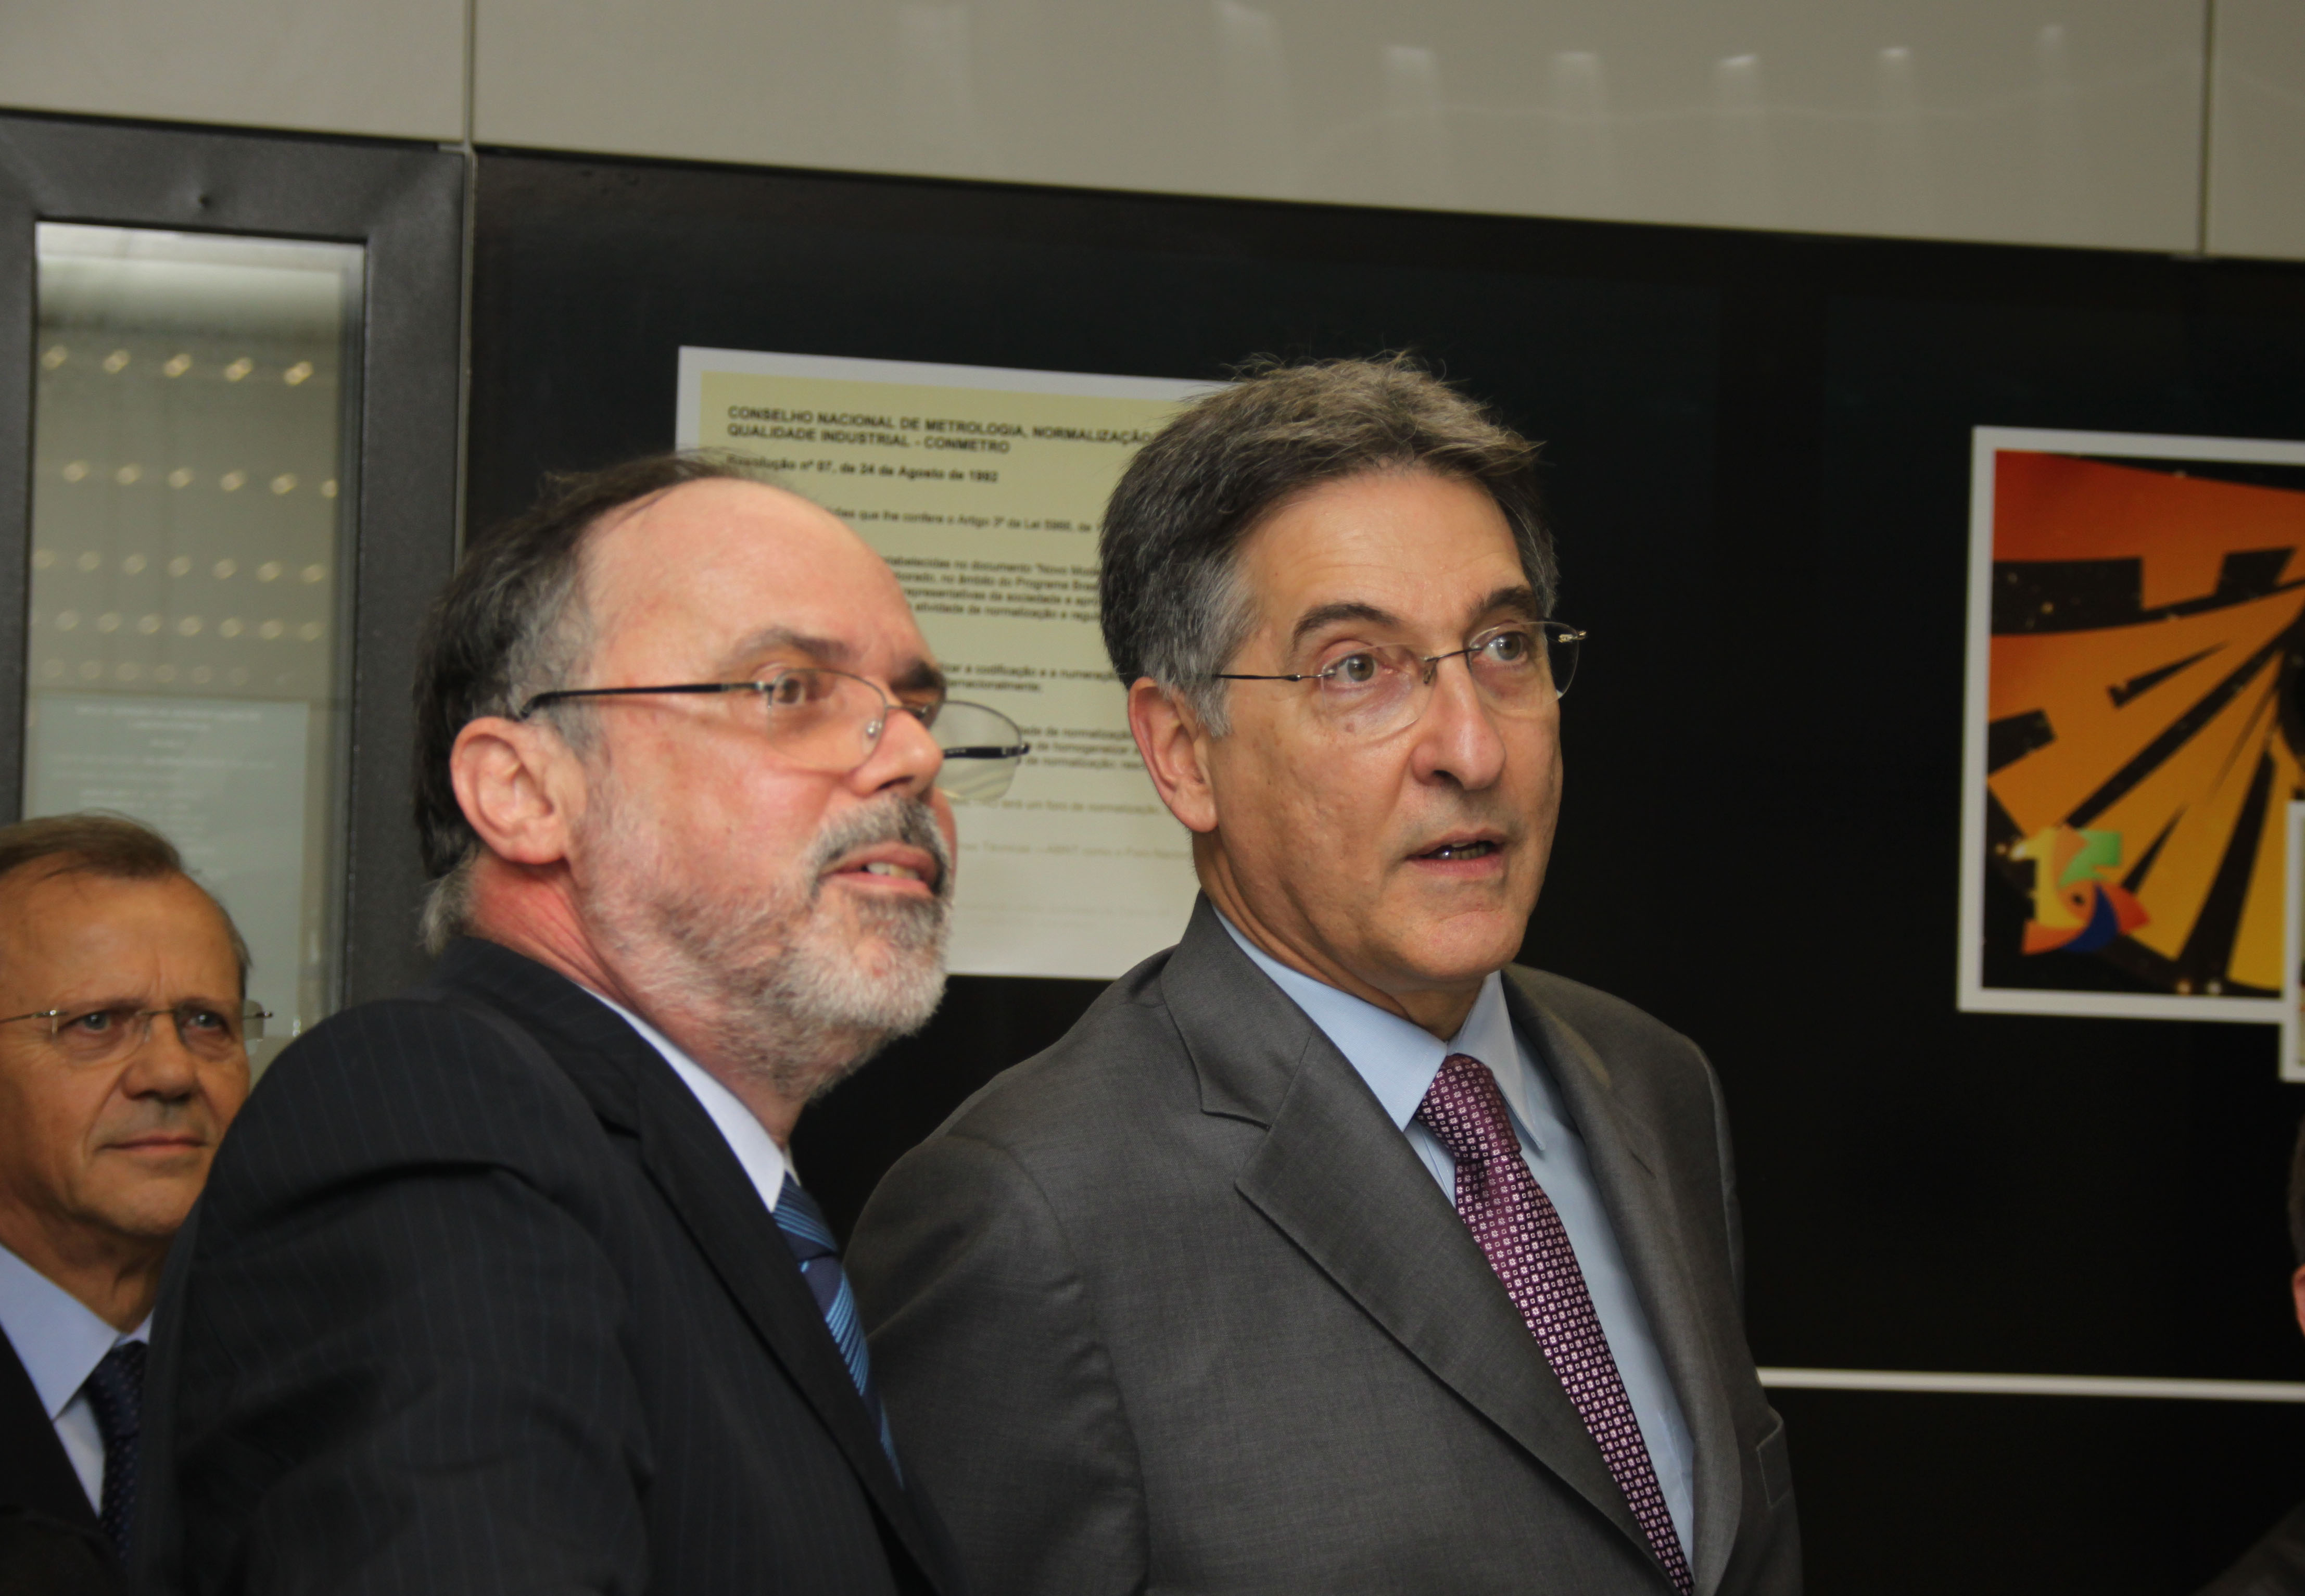 O presidente do Inmetro, Joo Jornada, apresenta o Museu ao ministro Fernando Pimentel